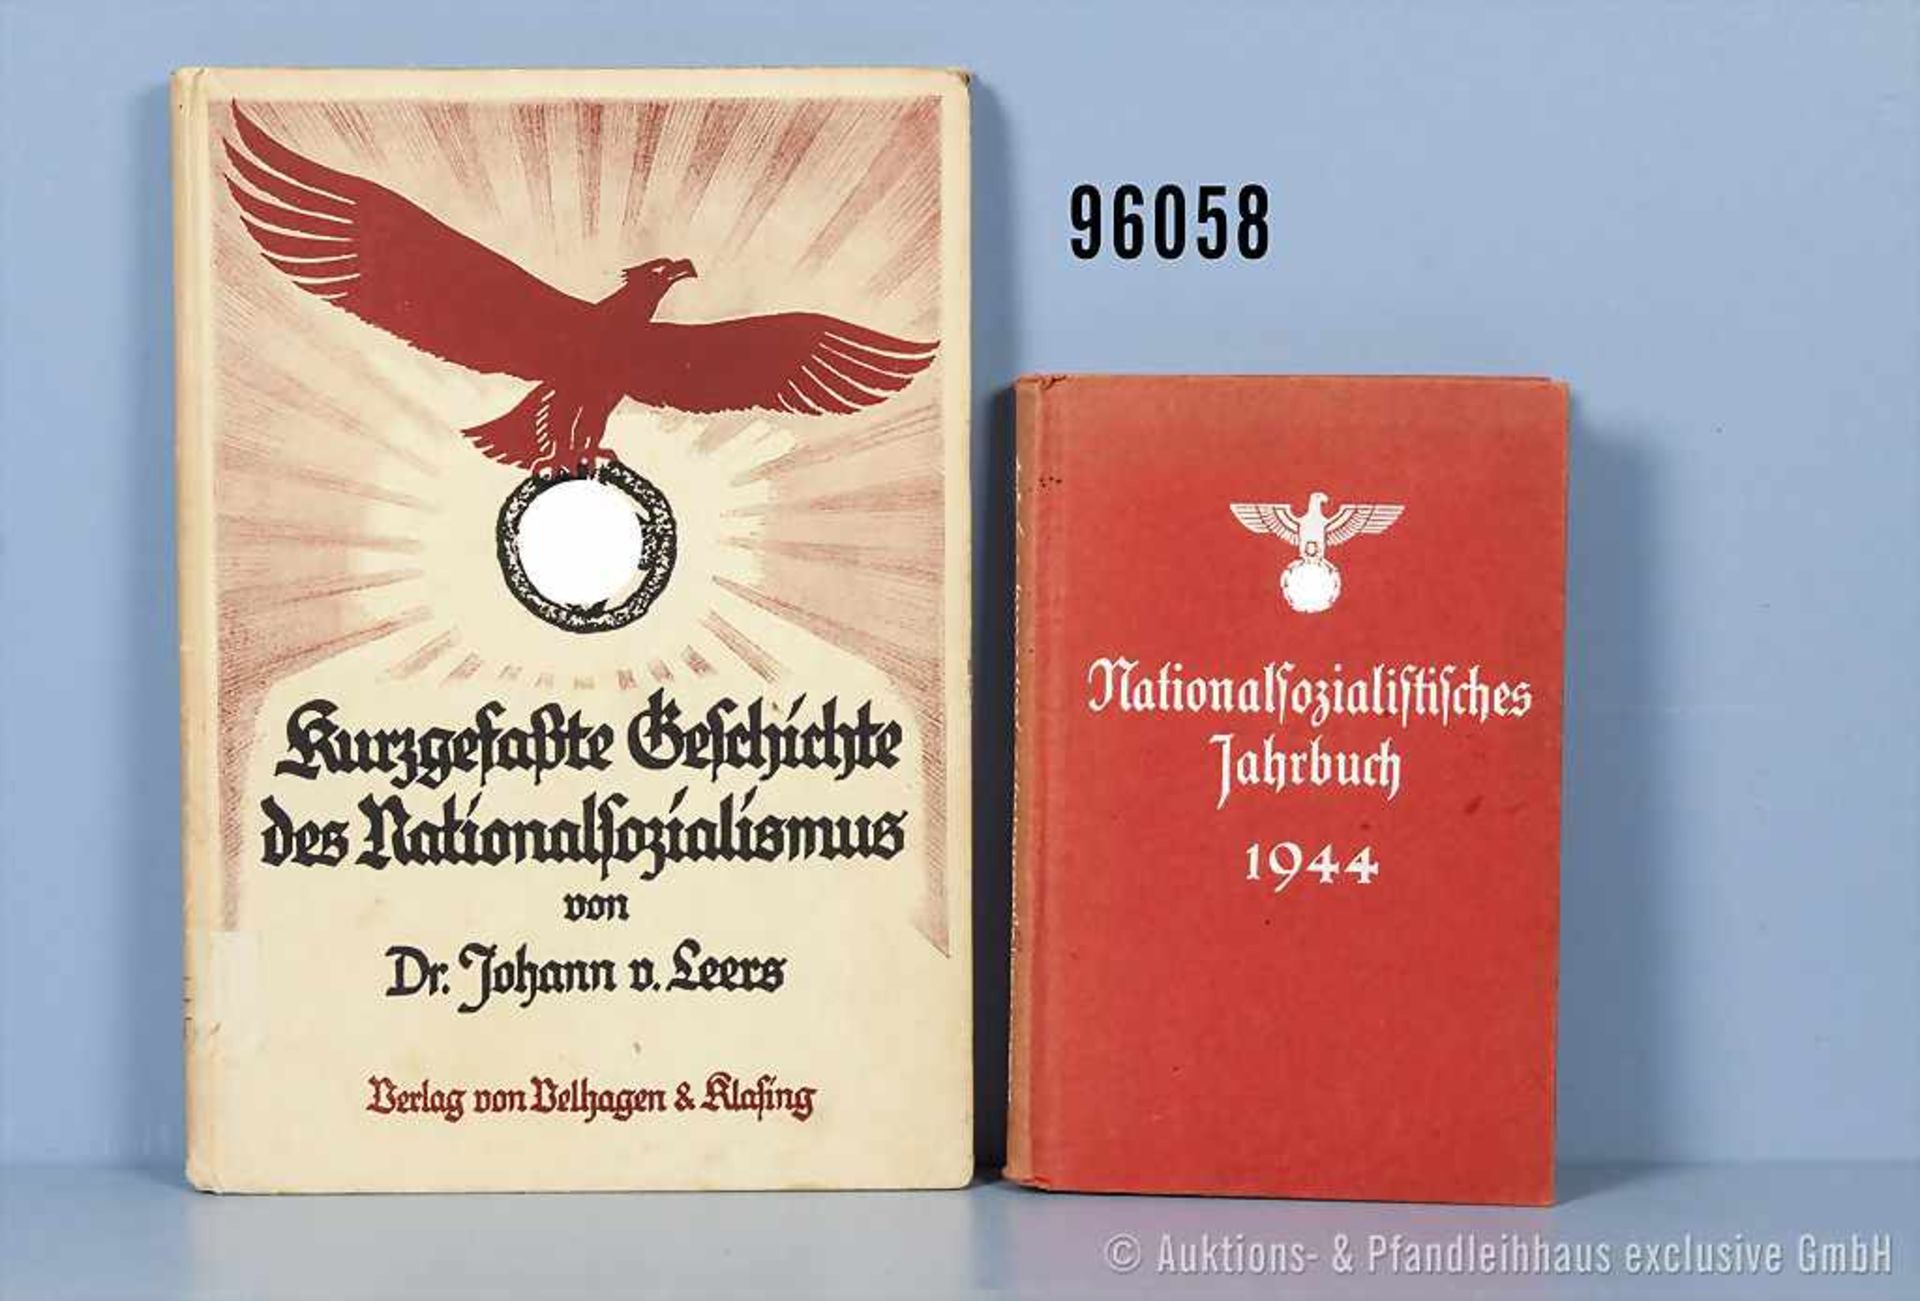 Konv. 2 Bücher VK, "Nationalsozialistisches Jahrbuch 1944" und "Kurzgefaßte Geschichte des